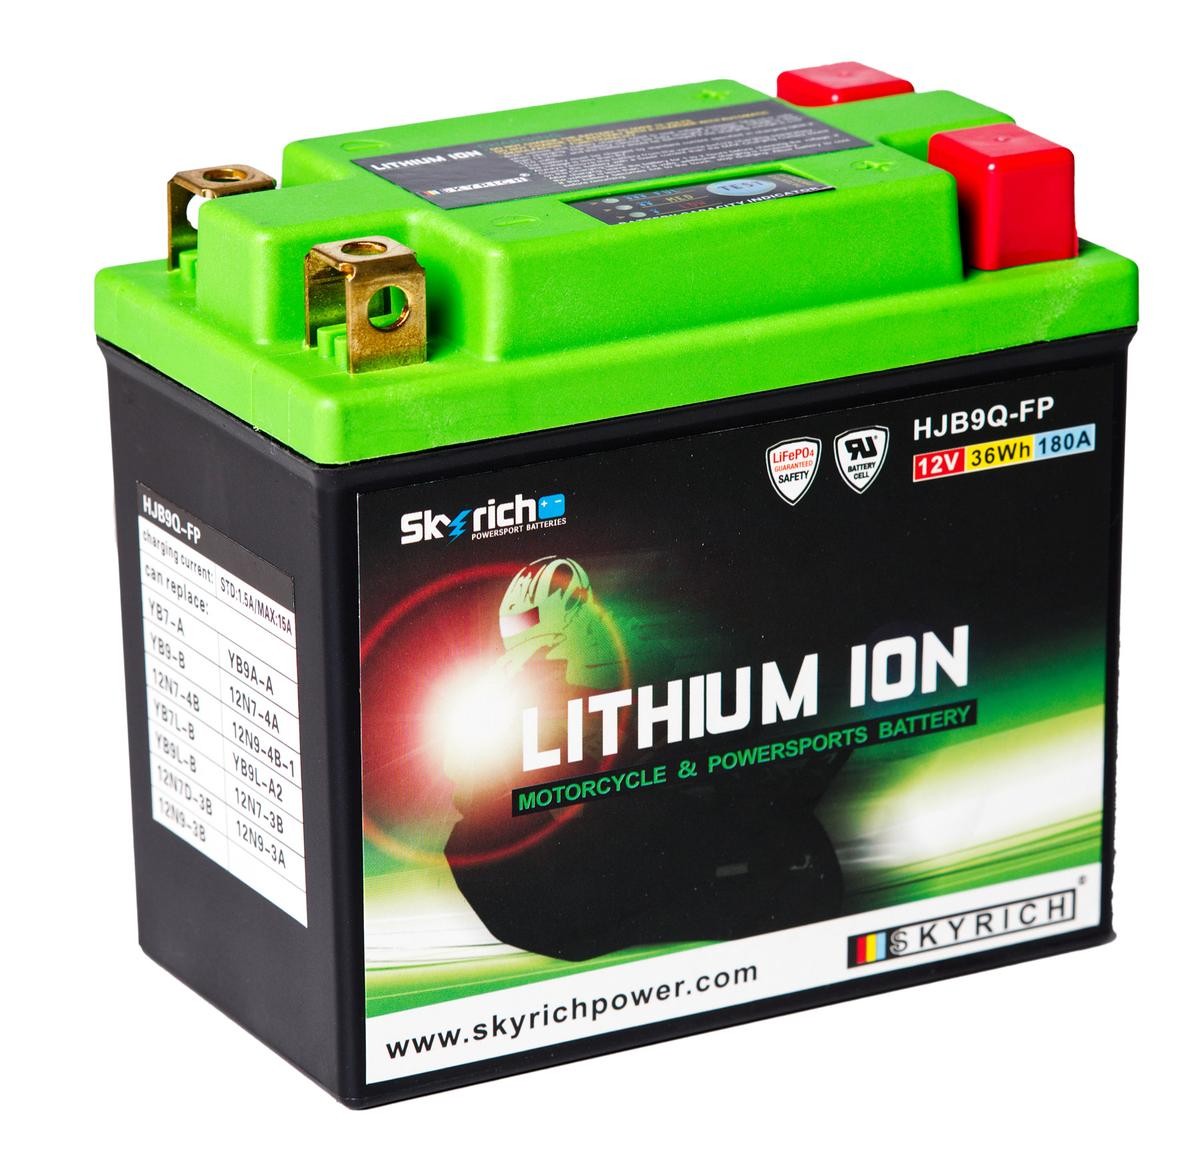 MALAGUTI CIAK Batterie 12V 3Ah 180A N Li-Ionen-Batterie SKYRICH LITHIUM ION HJB9Q-FP